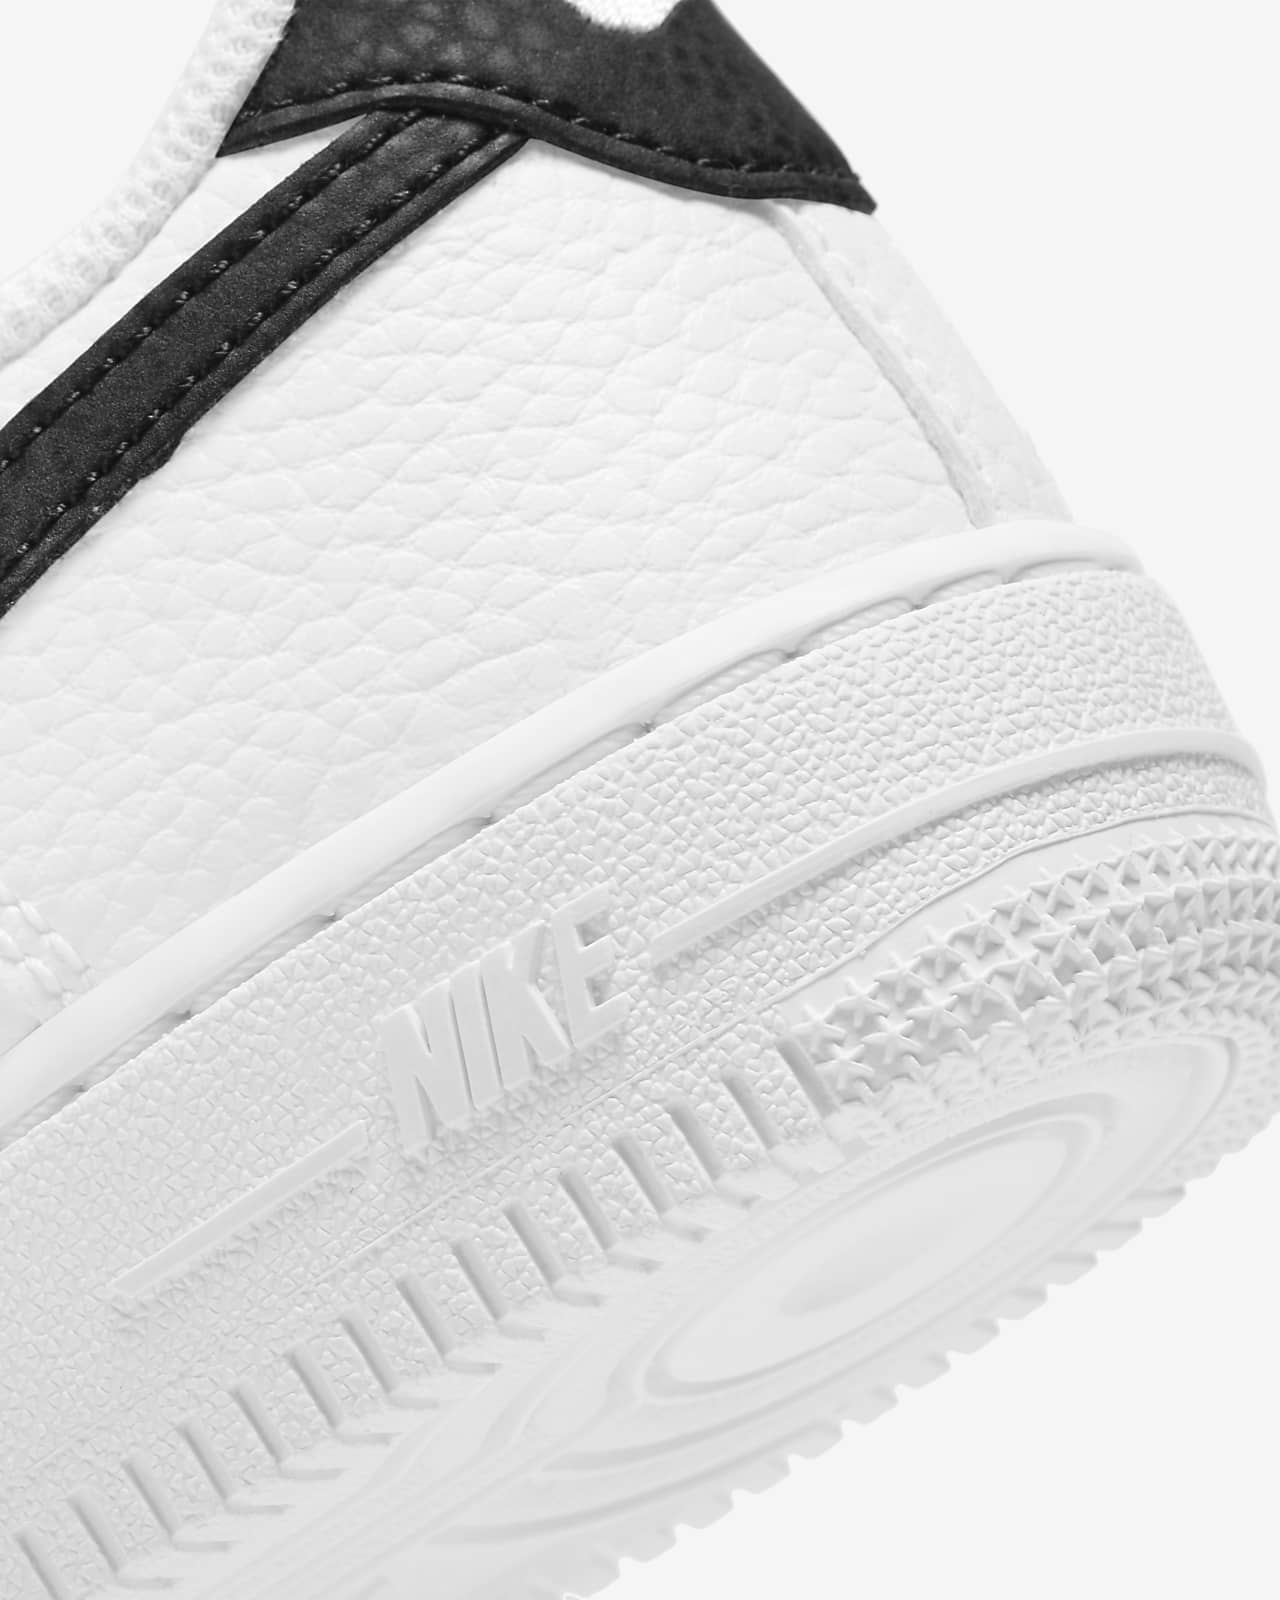 Nike Air Force 1 (Toddler) White/Black